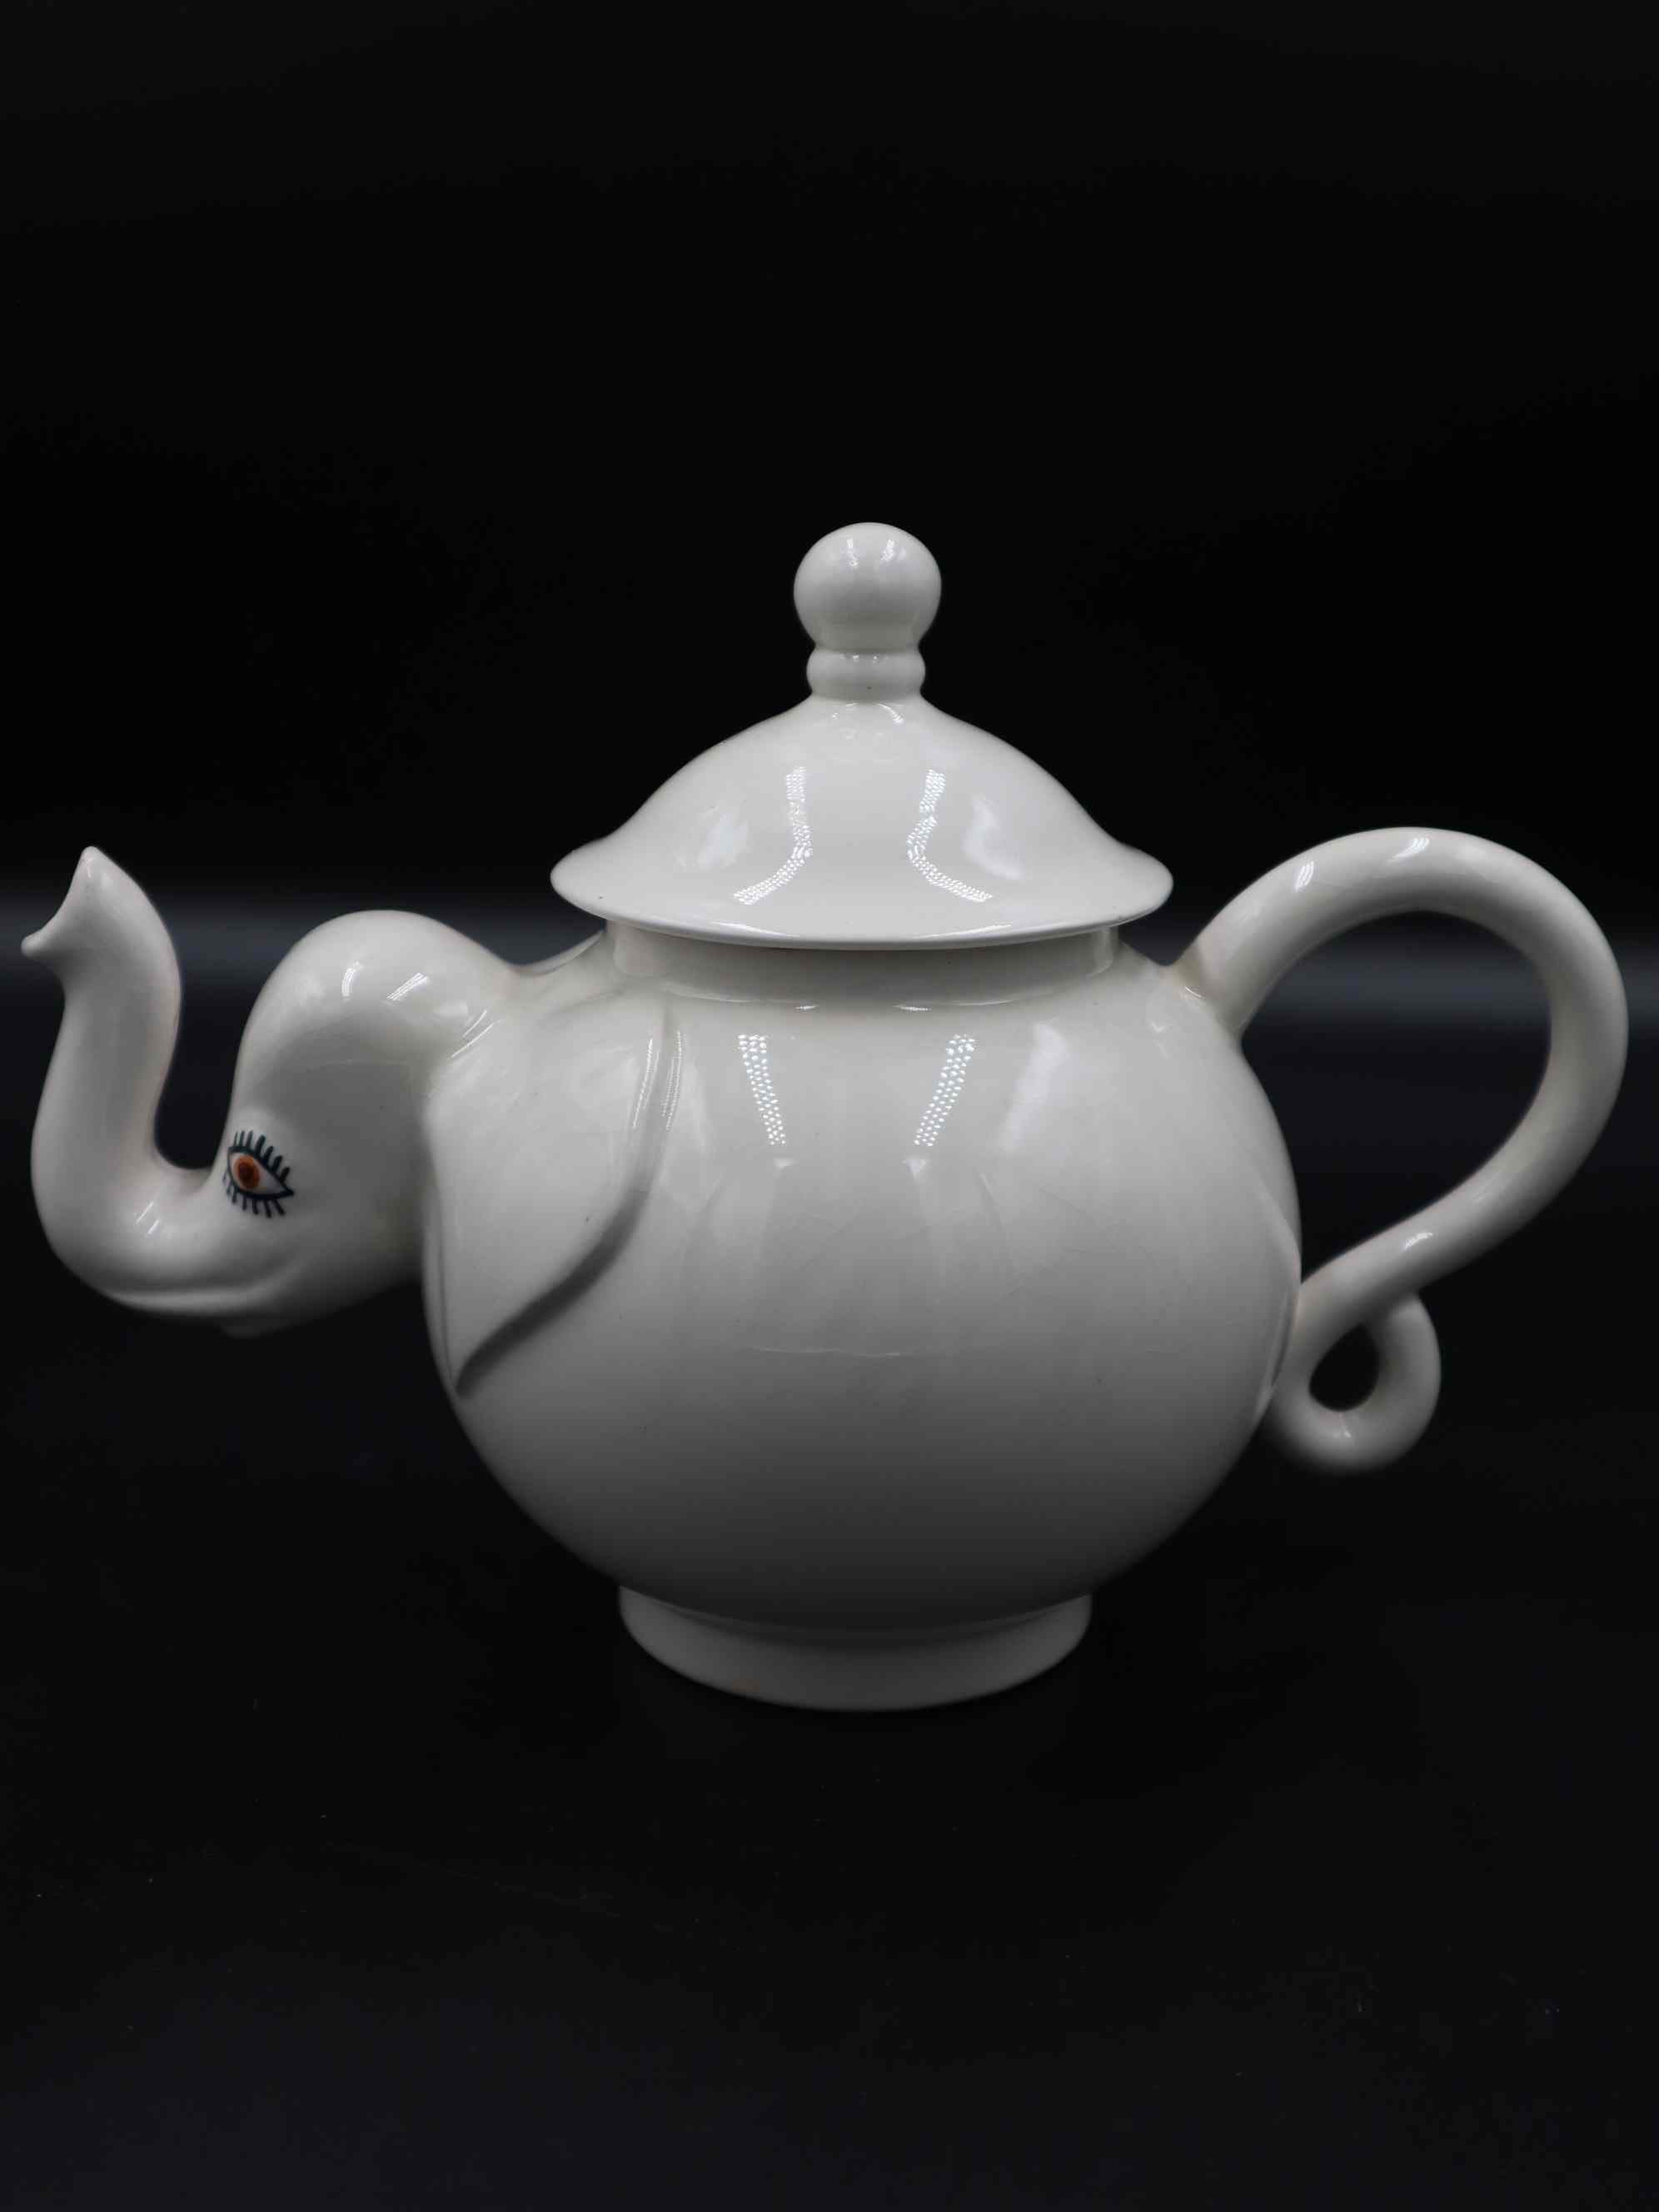 Lustre Pottery Elephant Teapot